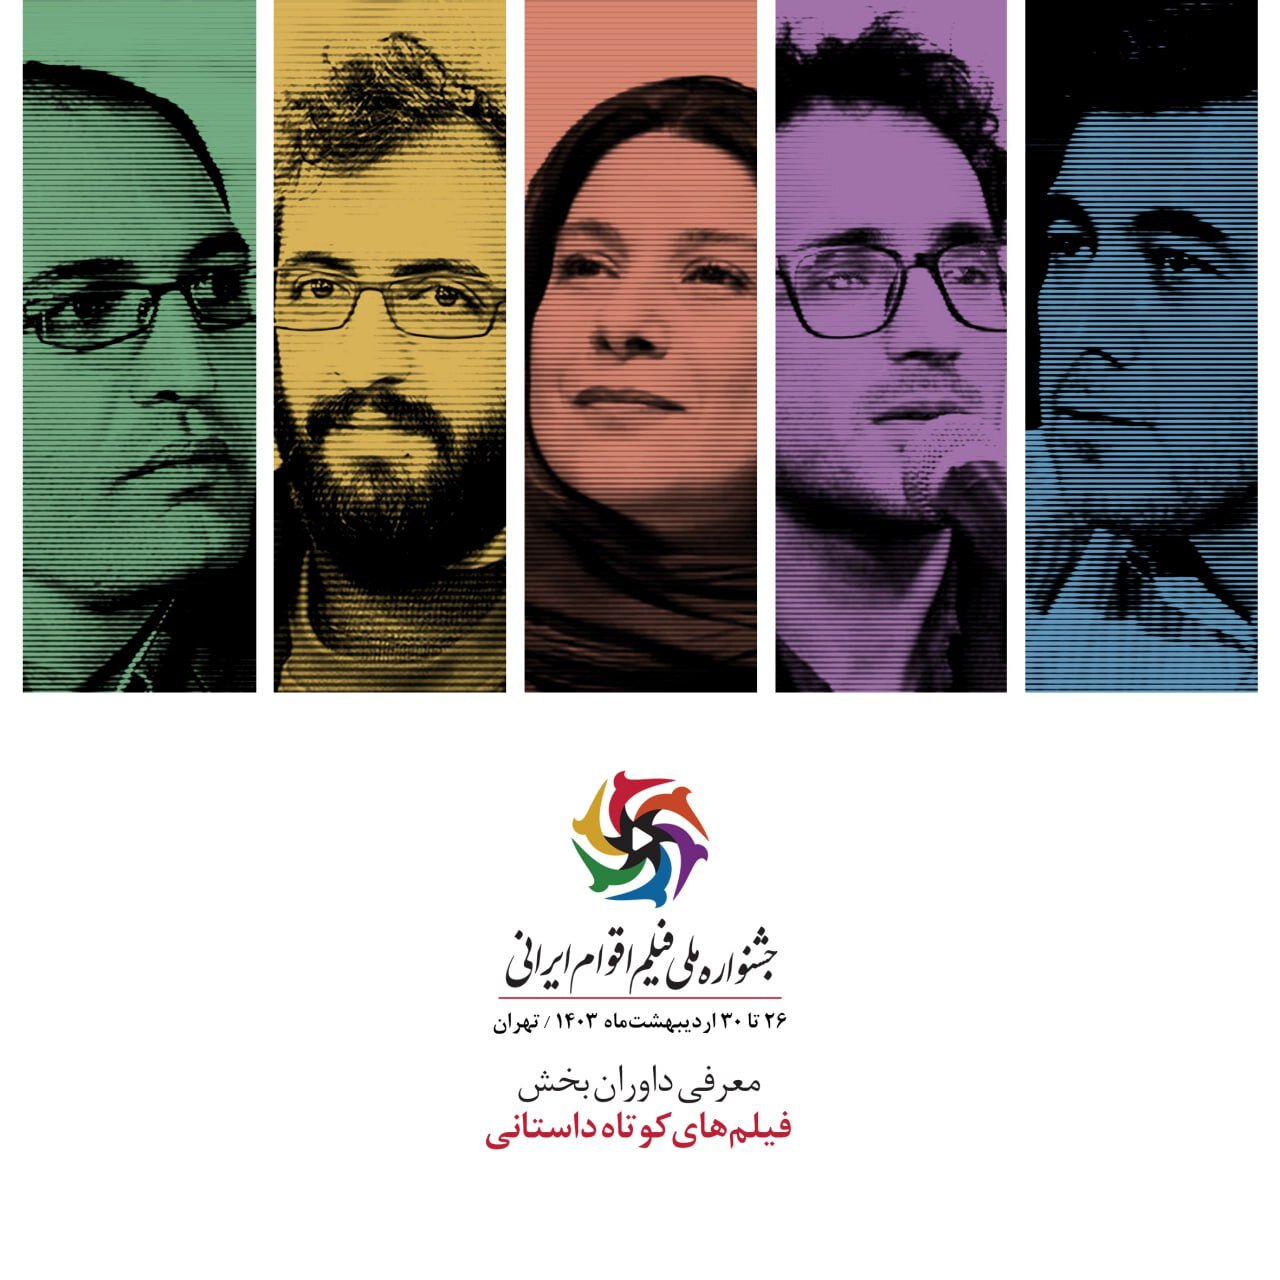 هیئت داوران بخش داستان کوتاه جشنواره ملی فیلم اقوام ایرانی معرفی شدند